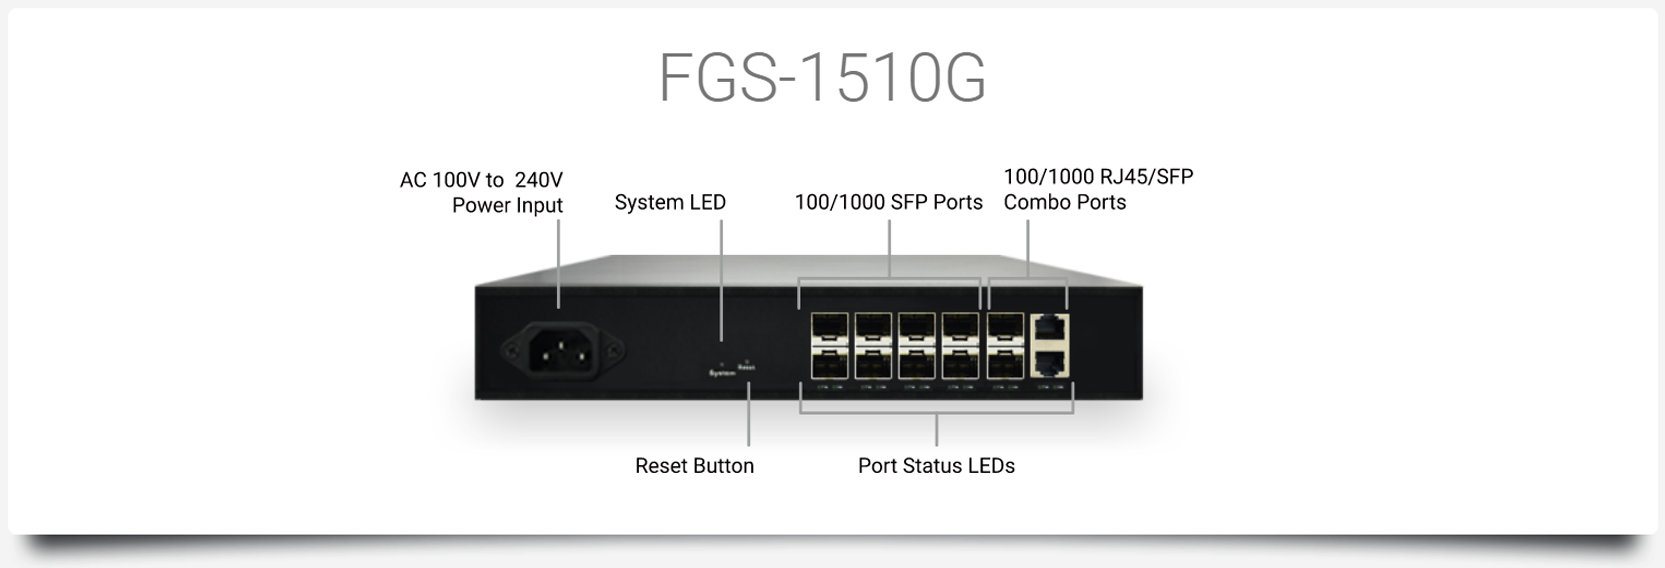 FGS-1510G